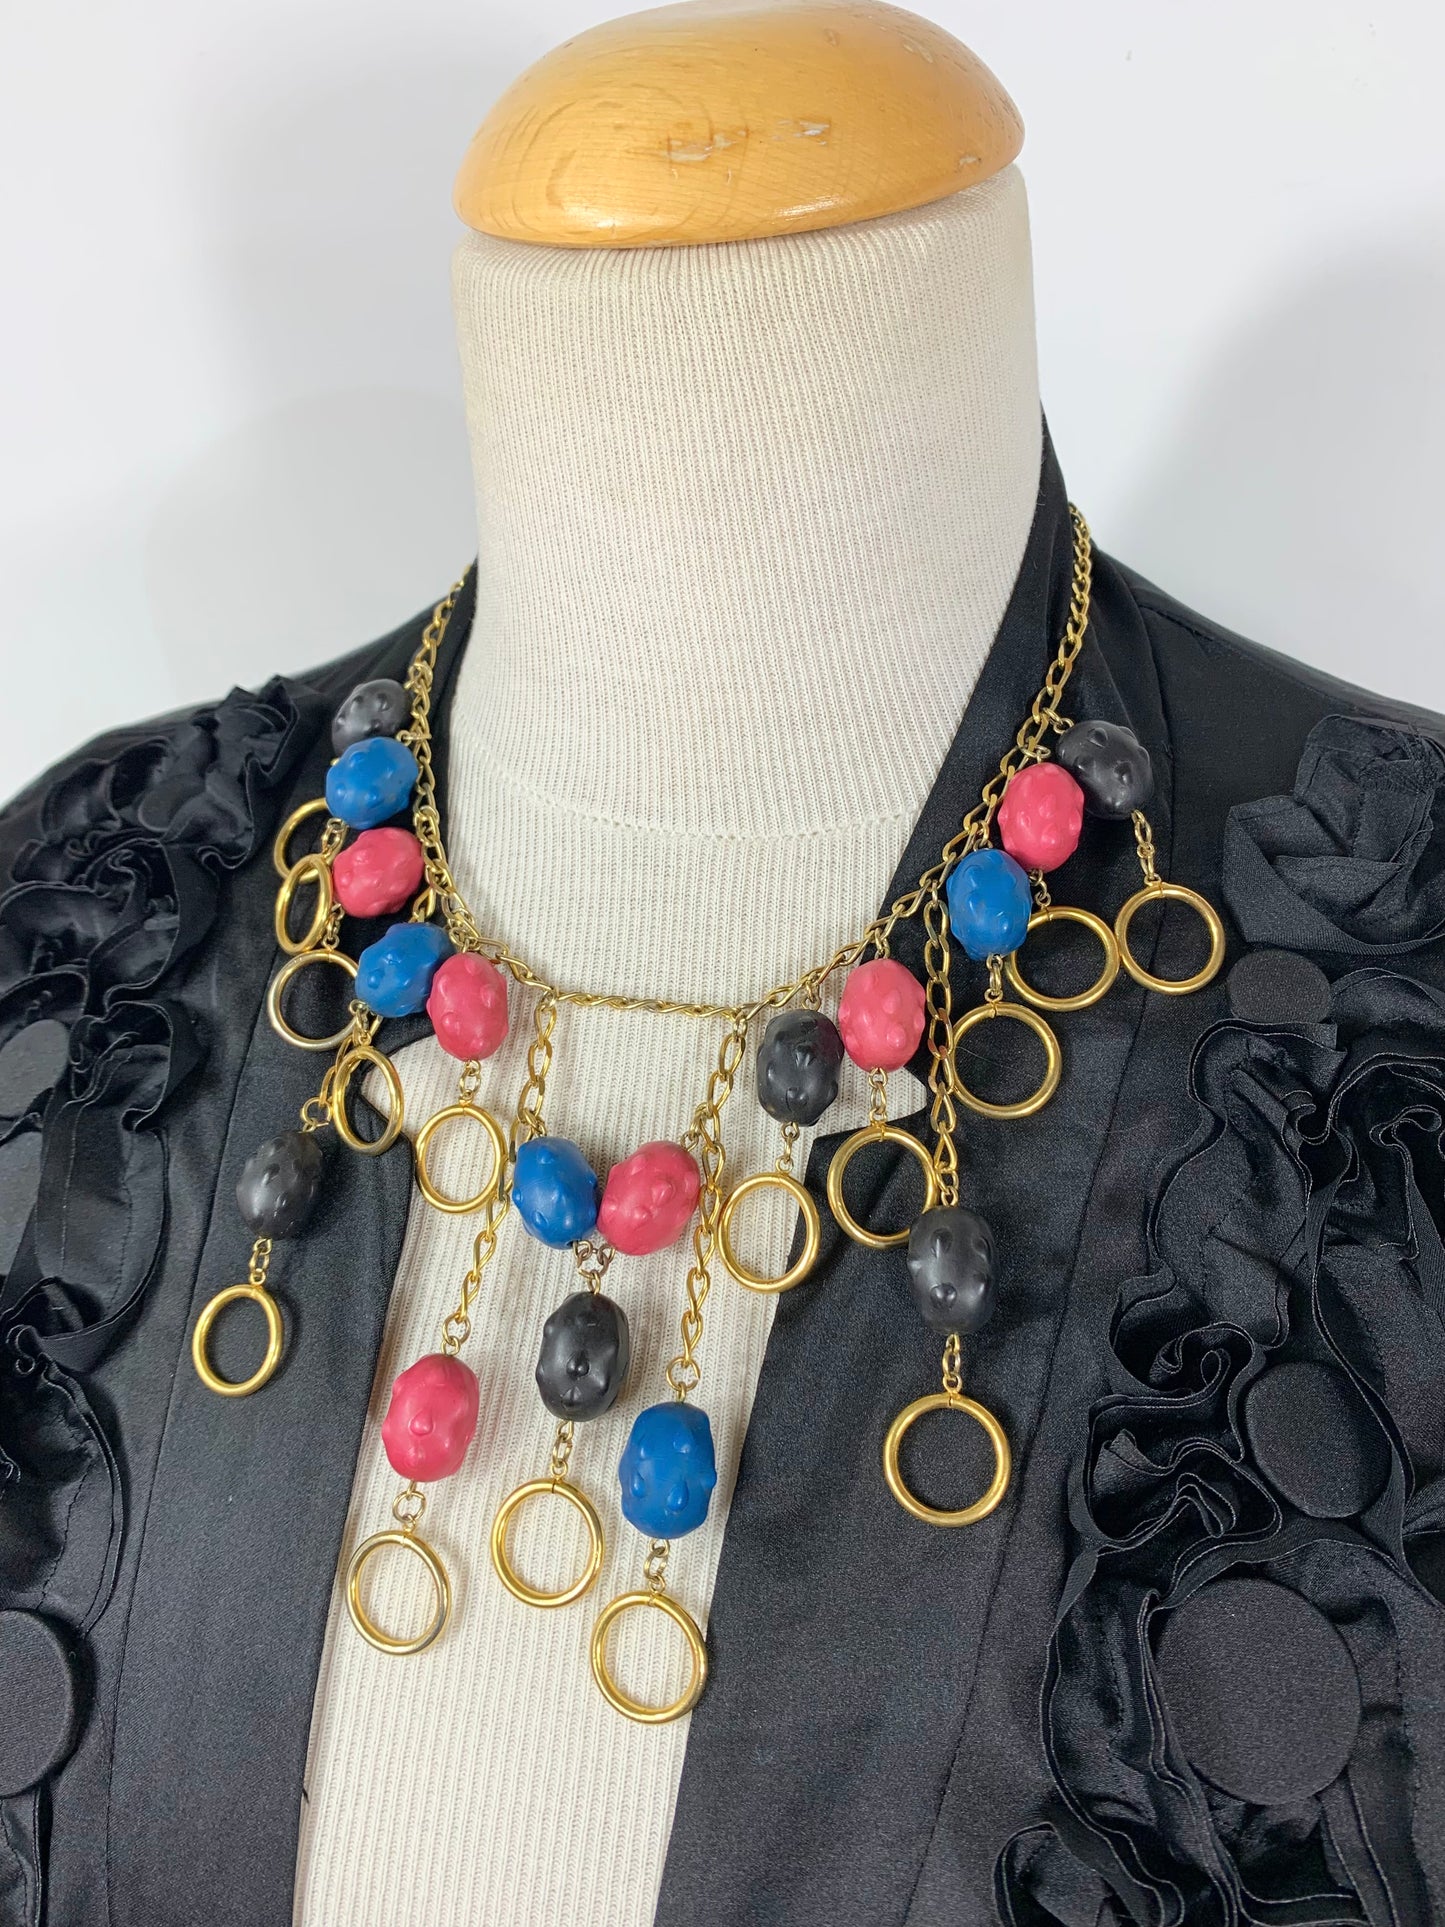 Collier vintage Wilma Spagli Italie perles bleu rose noir et chaine dorées